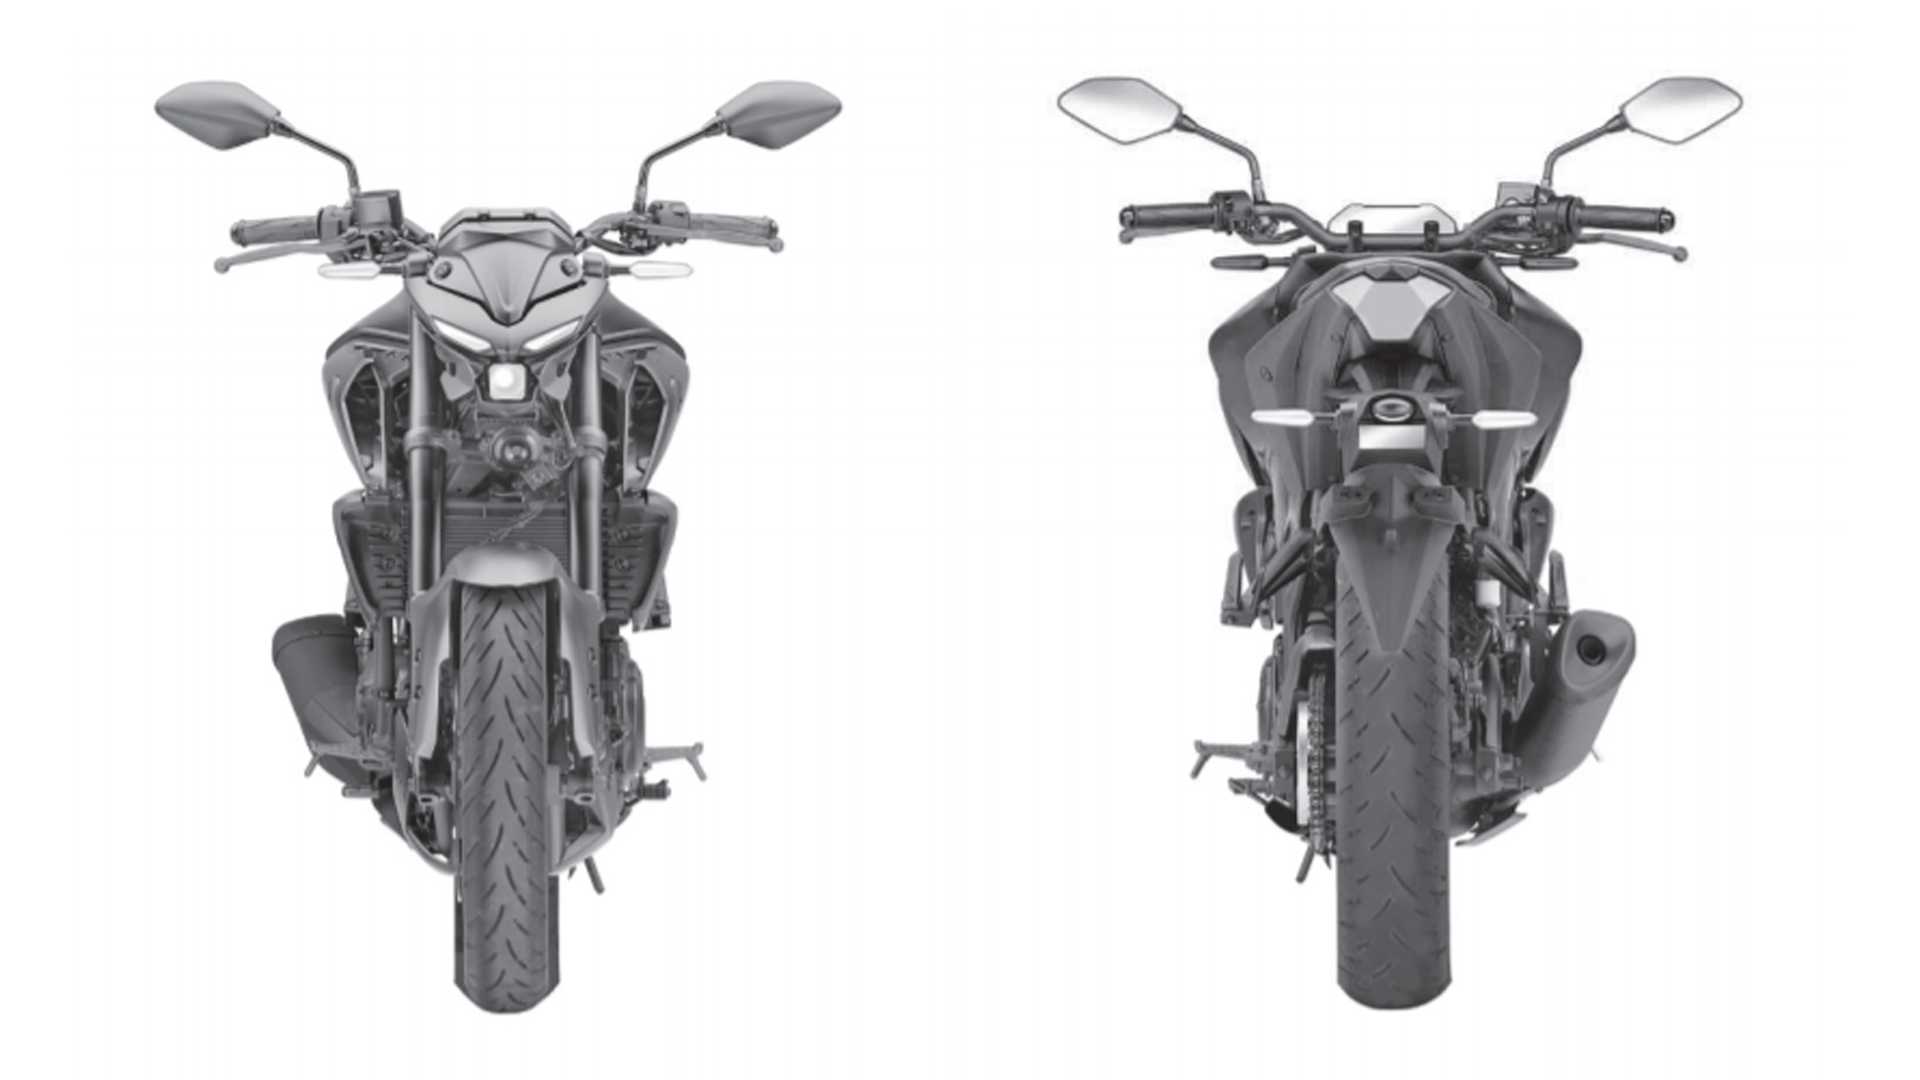 Yamaha patenteia novas MT-03 e Fazer 250 no Brasil